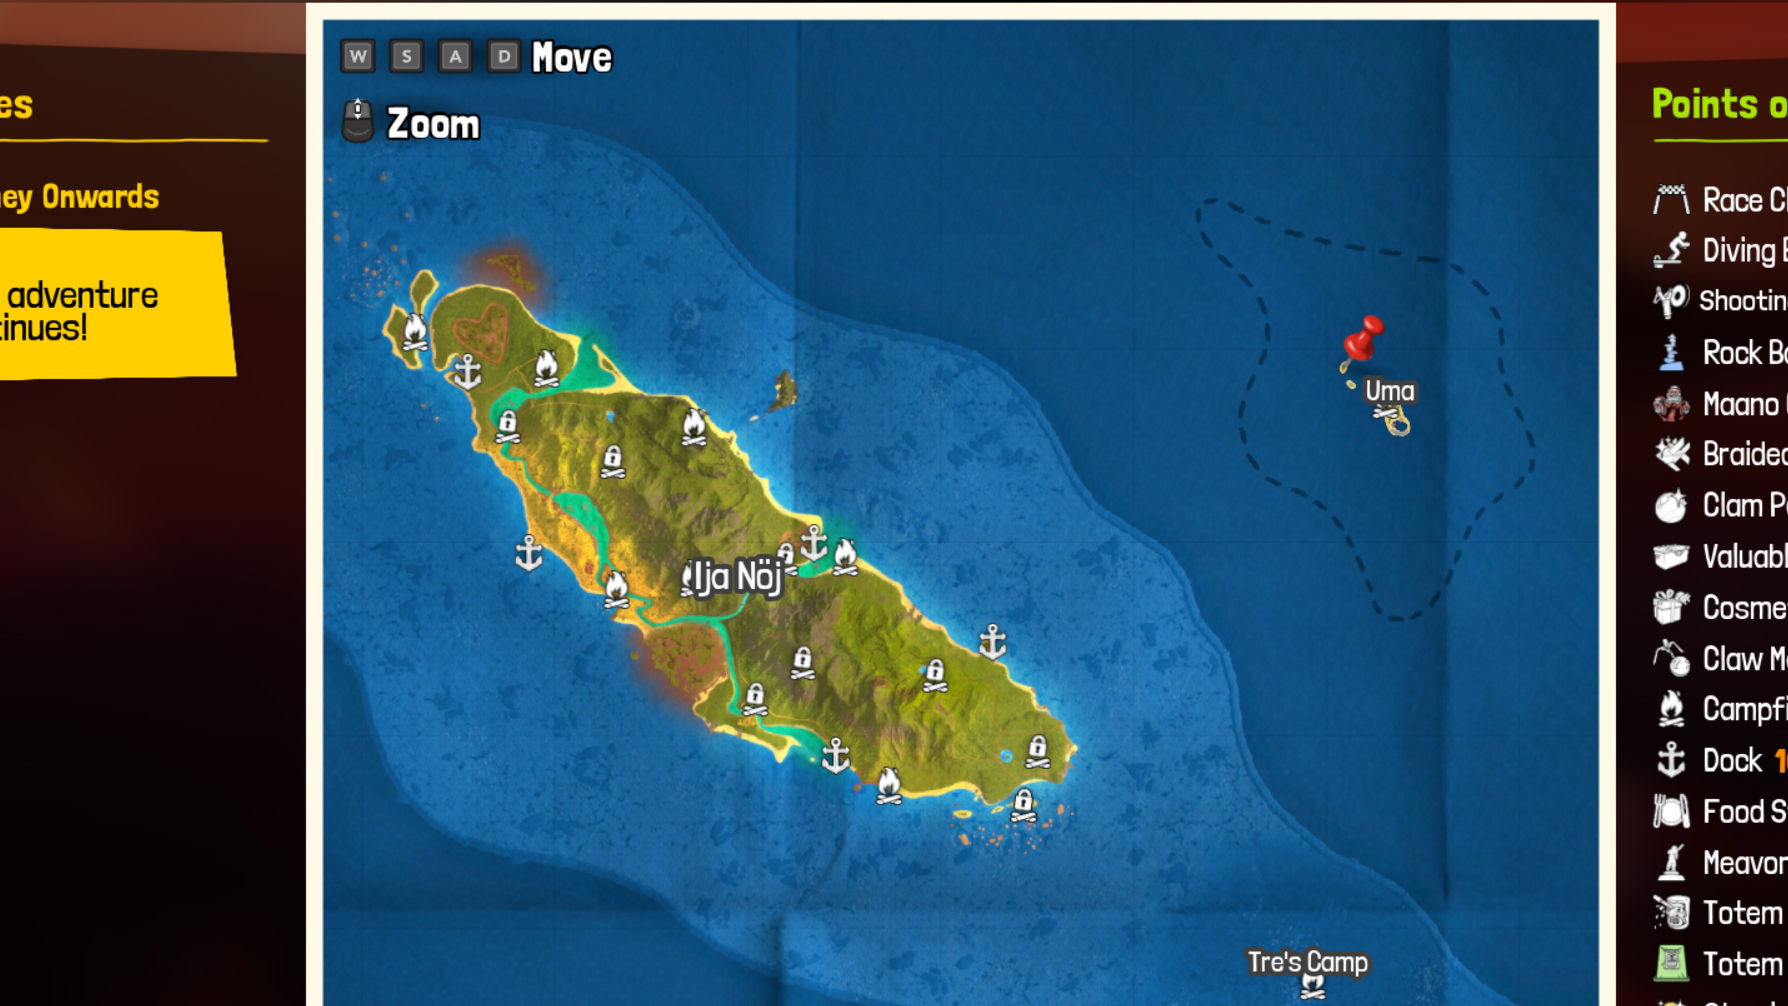 Tchia treasure map